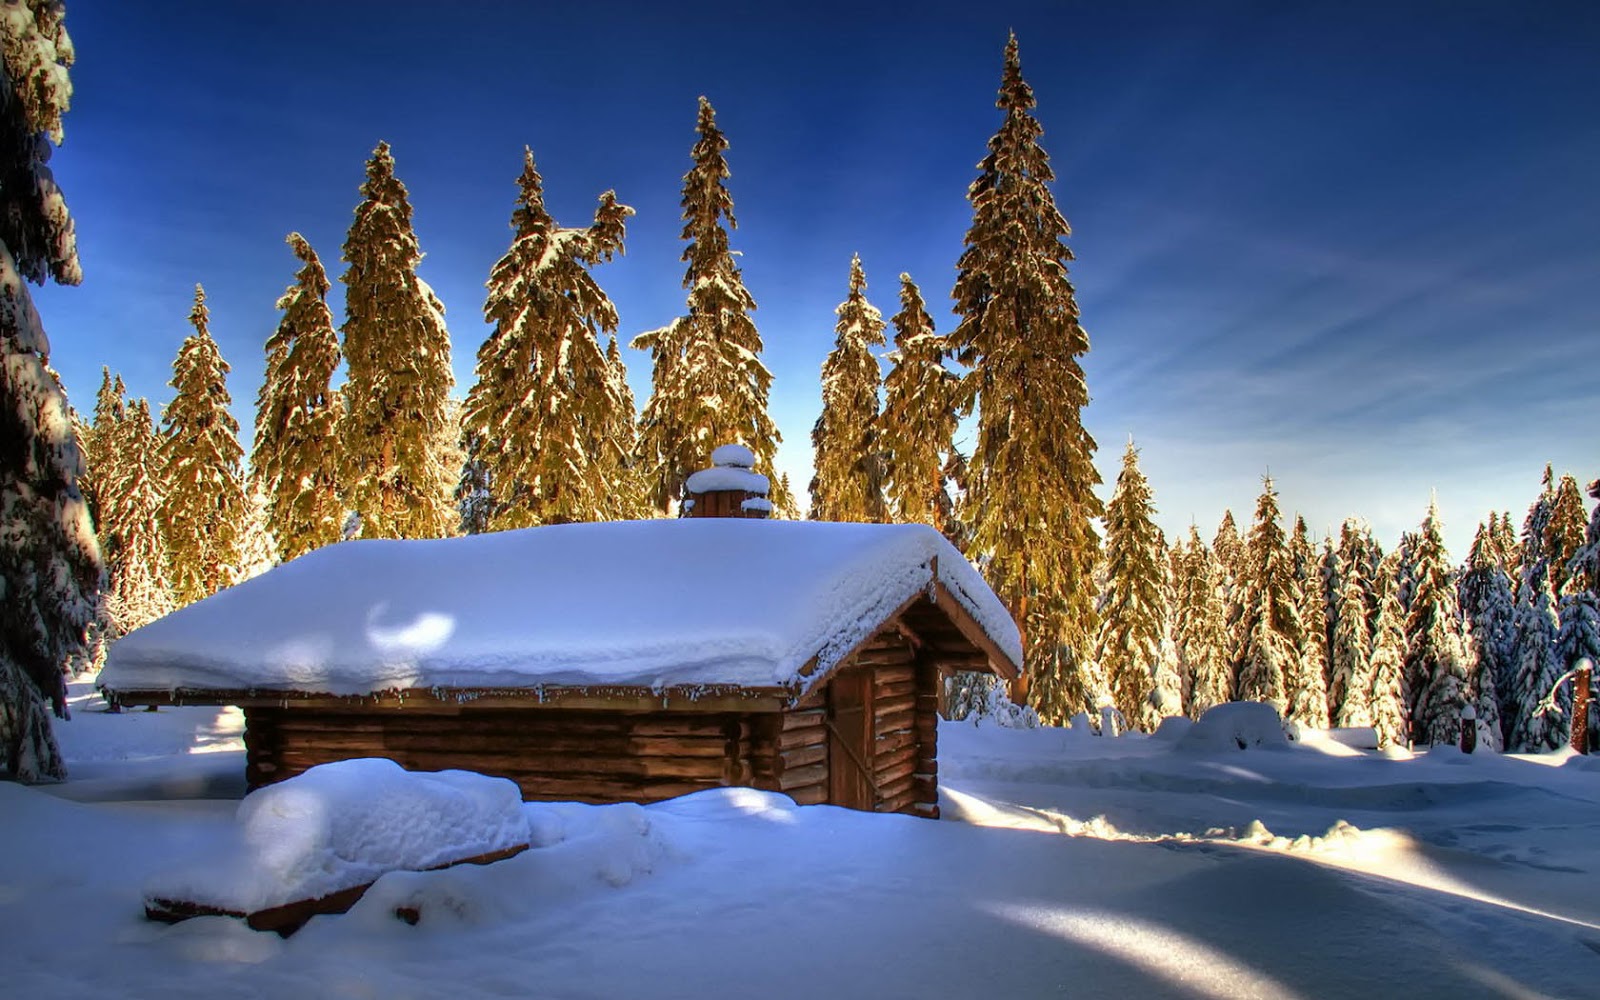 http://2.bp.blogspot.com/-xzN48pSGmGQ/UOgYahttW0I/AAAAAAAAKzs/C7GnMWcjamI/s1600/winter-wallpaper-met-een-houten-hut-in-de-sneeuw-met-bomen-op-de-achtergrond.jpg